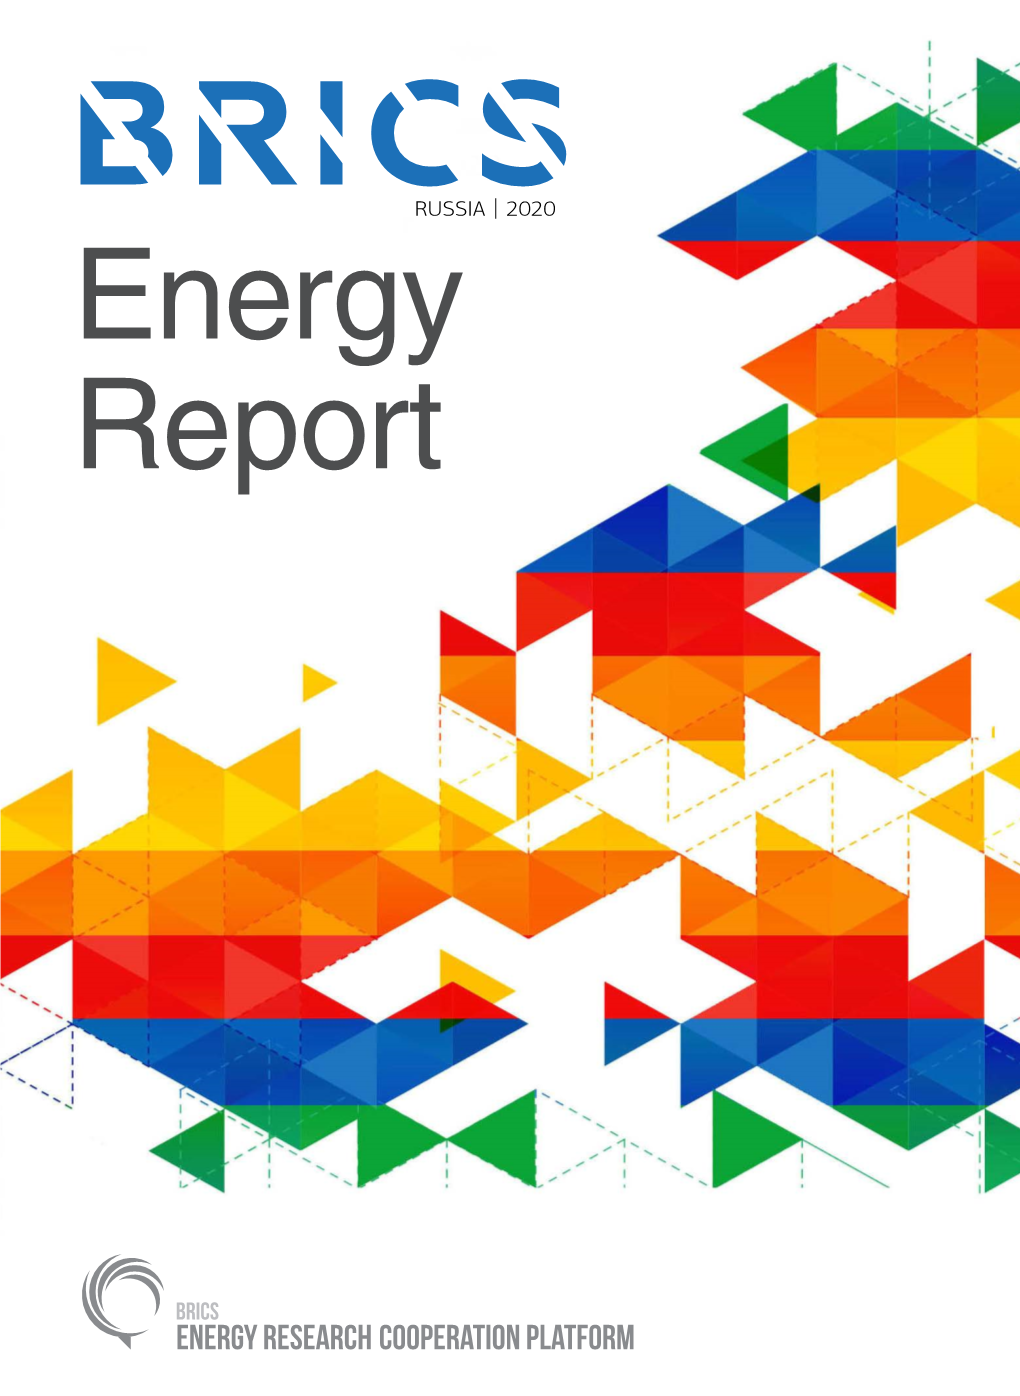 Brics Energy Report Acknowledgments